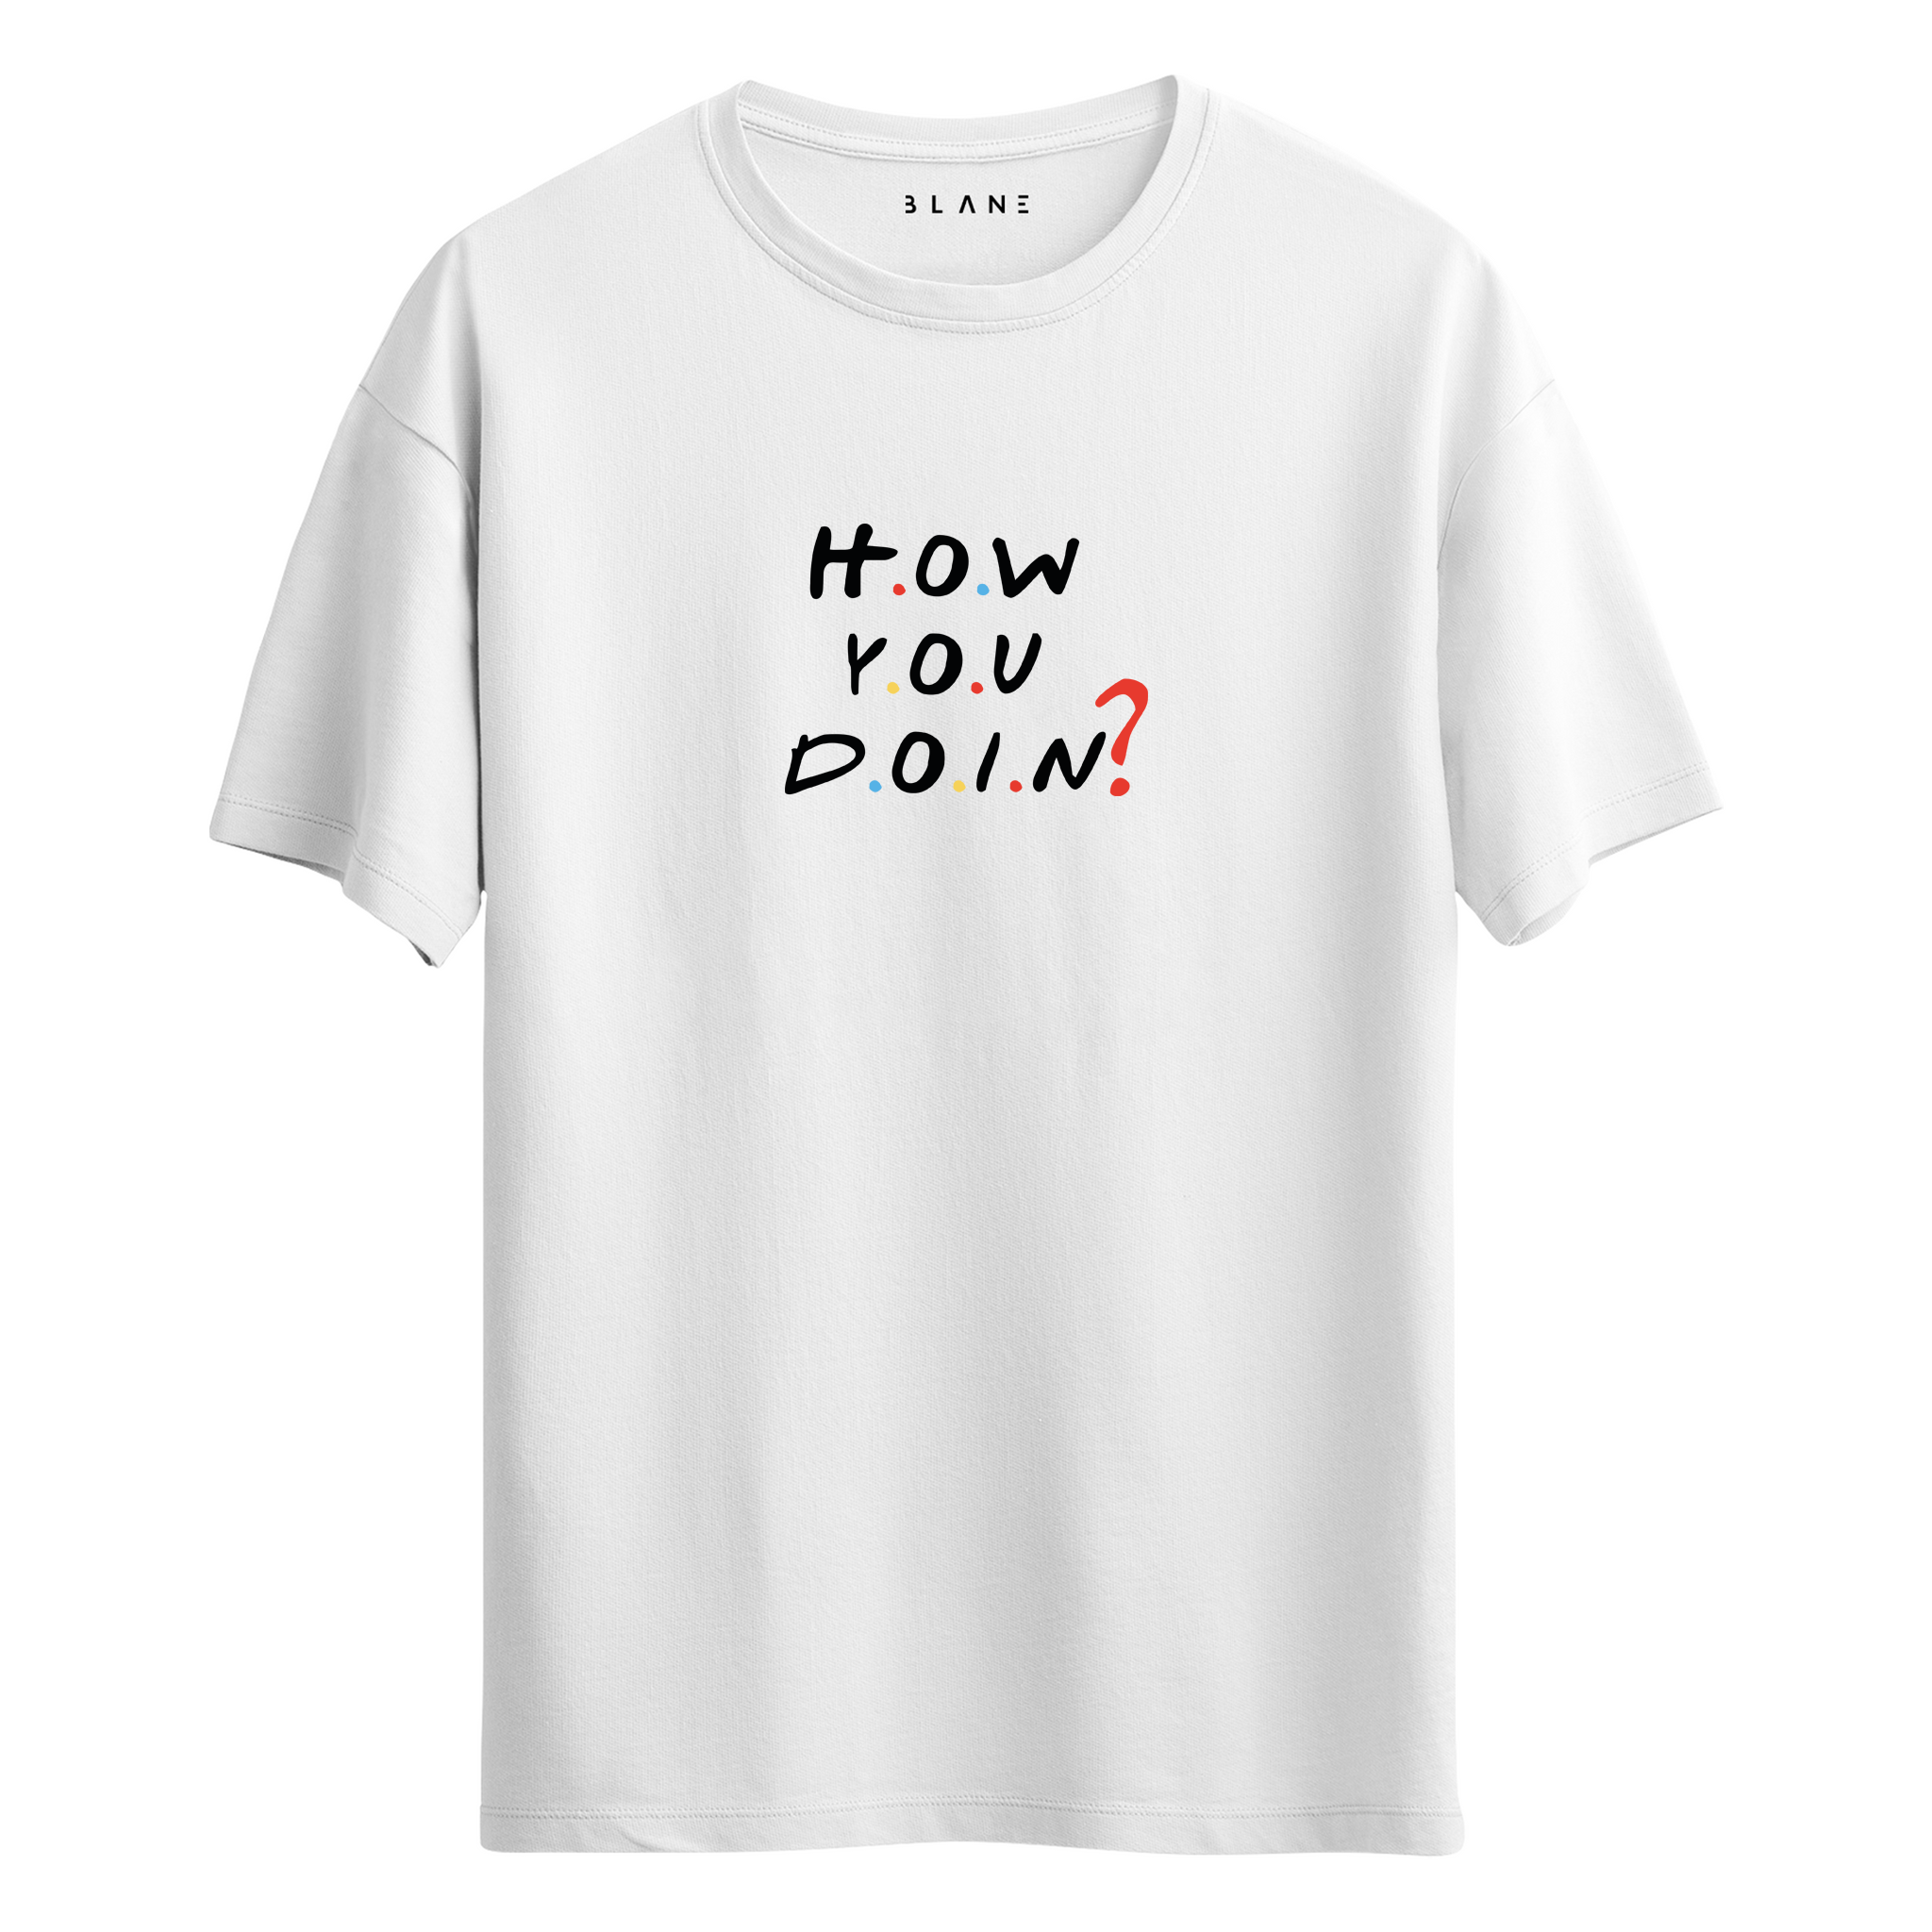 How You Doin? - T-Shirt